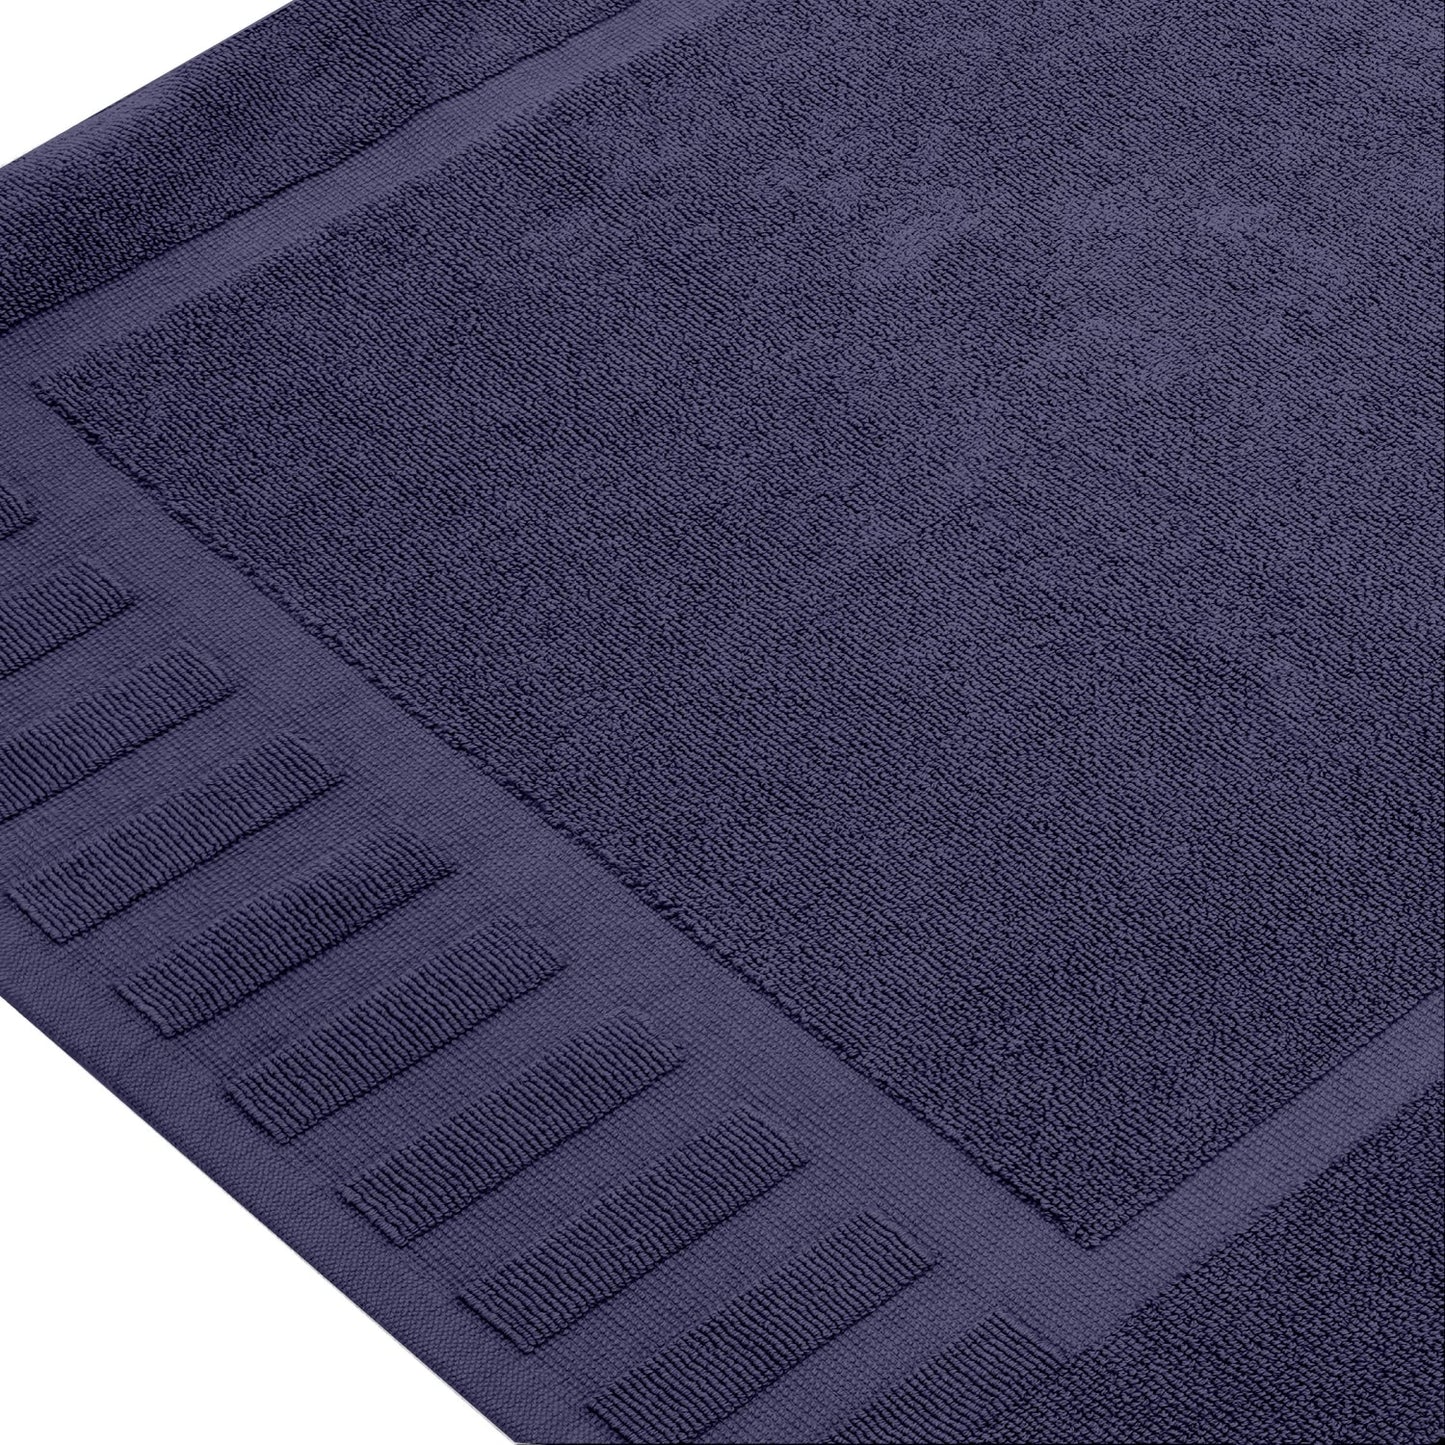 navy blue mats